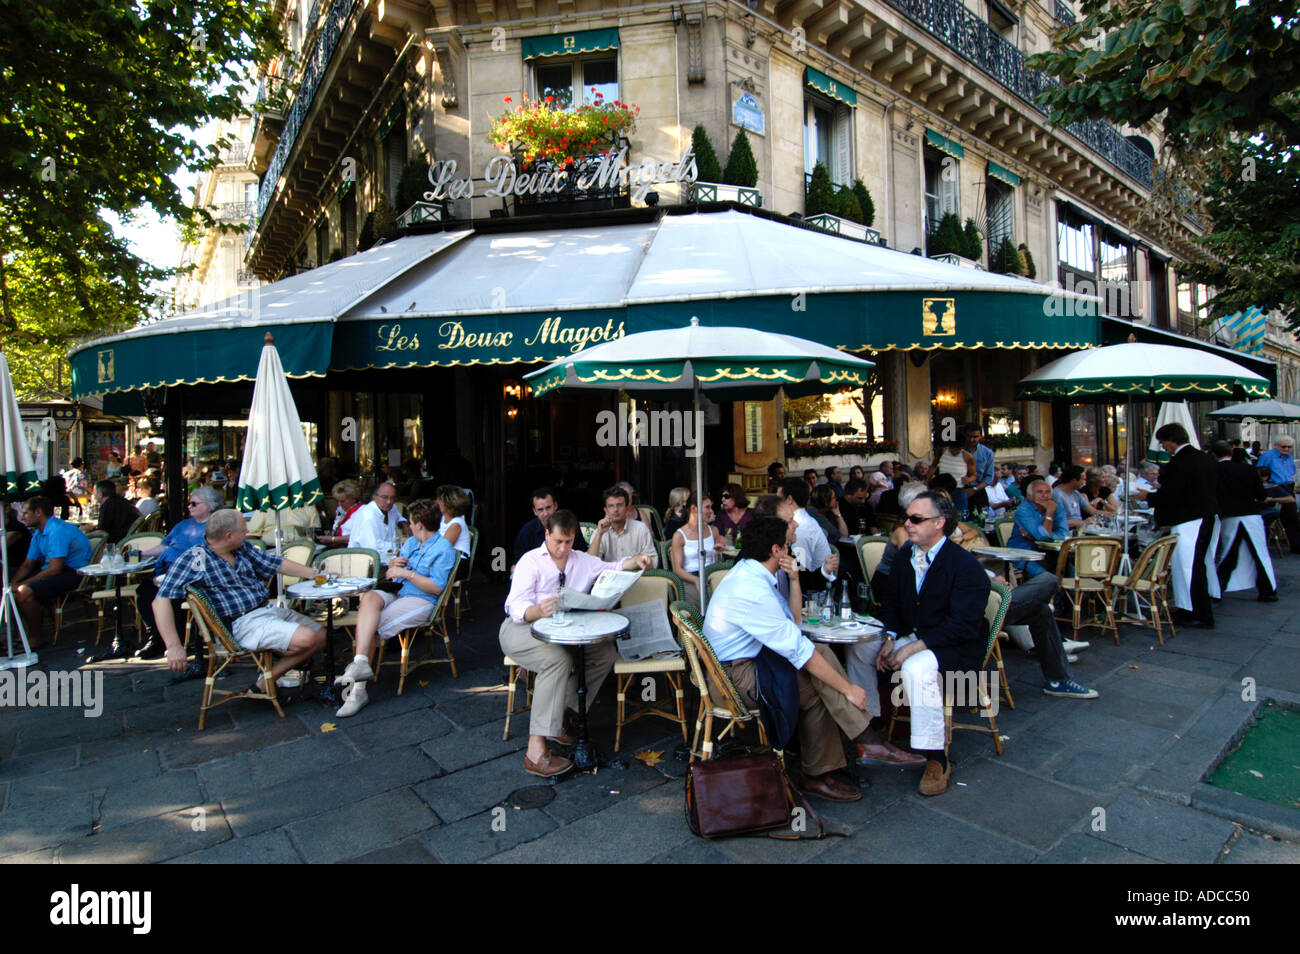 Les Deux Magots cafe in Saint Germain des Pres Paris France Stock Photo